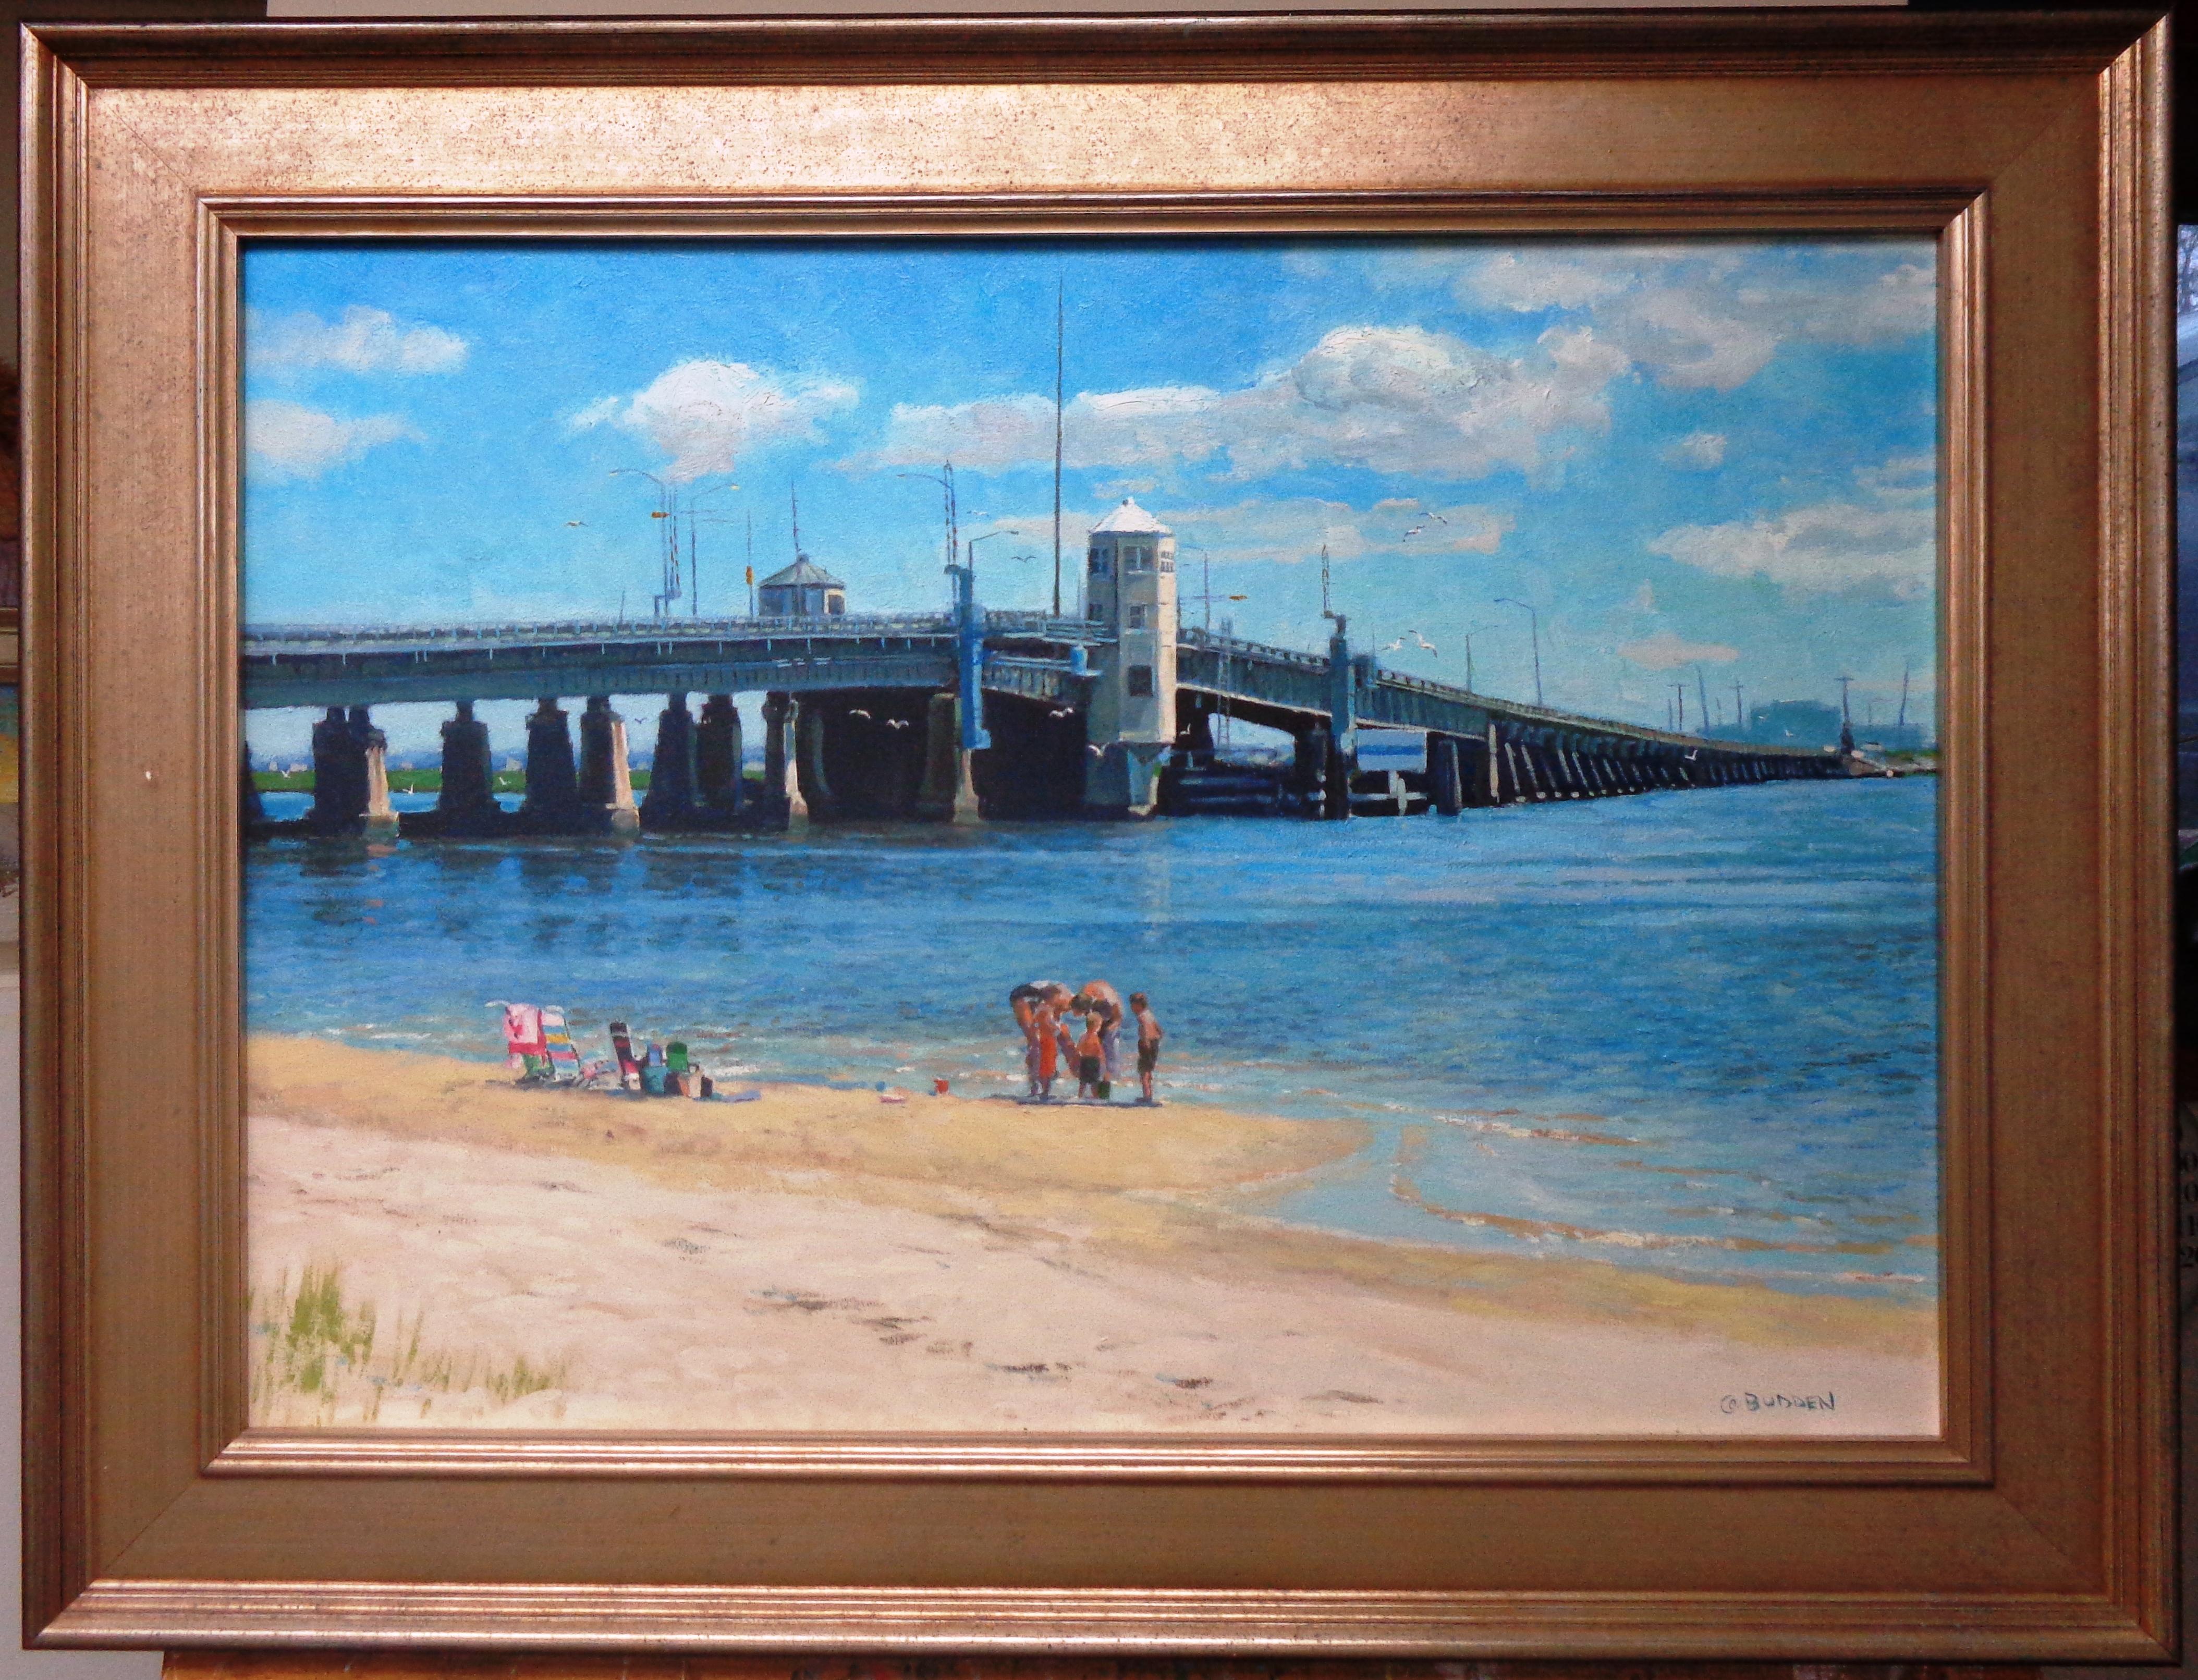 Pont original de Summers Point à Ocean City, NJ
huile/toile
20 x 28 taille de l'image 26 x 34 encadrée (le cadre présente des marques de vieillesse, etc.)
Une peinture à l'huile sur toile de l'artiste contemporain primé Michael Budden qui présente